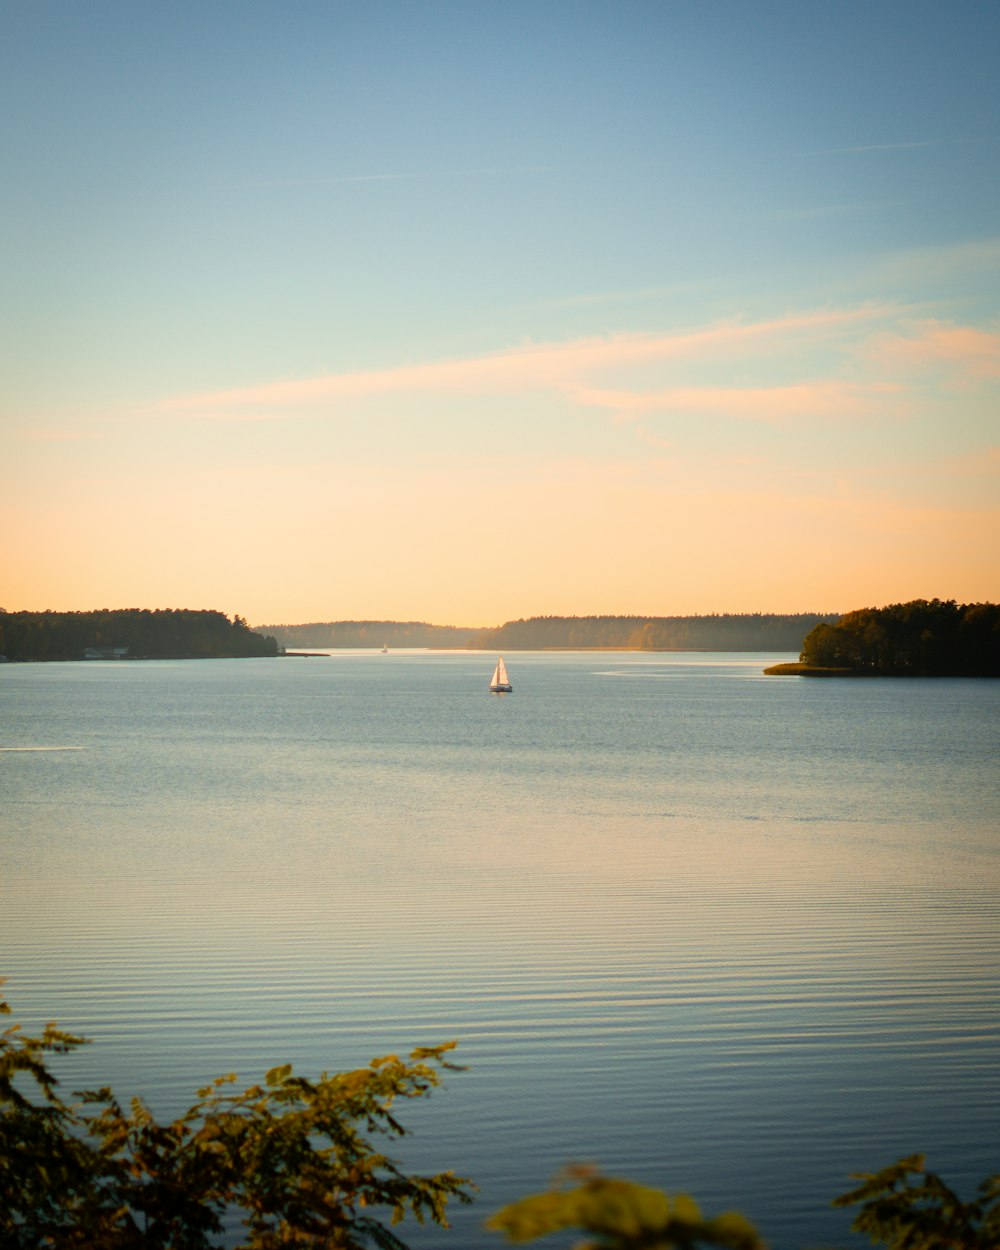 a sailboat on a lake at sunset